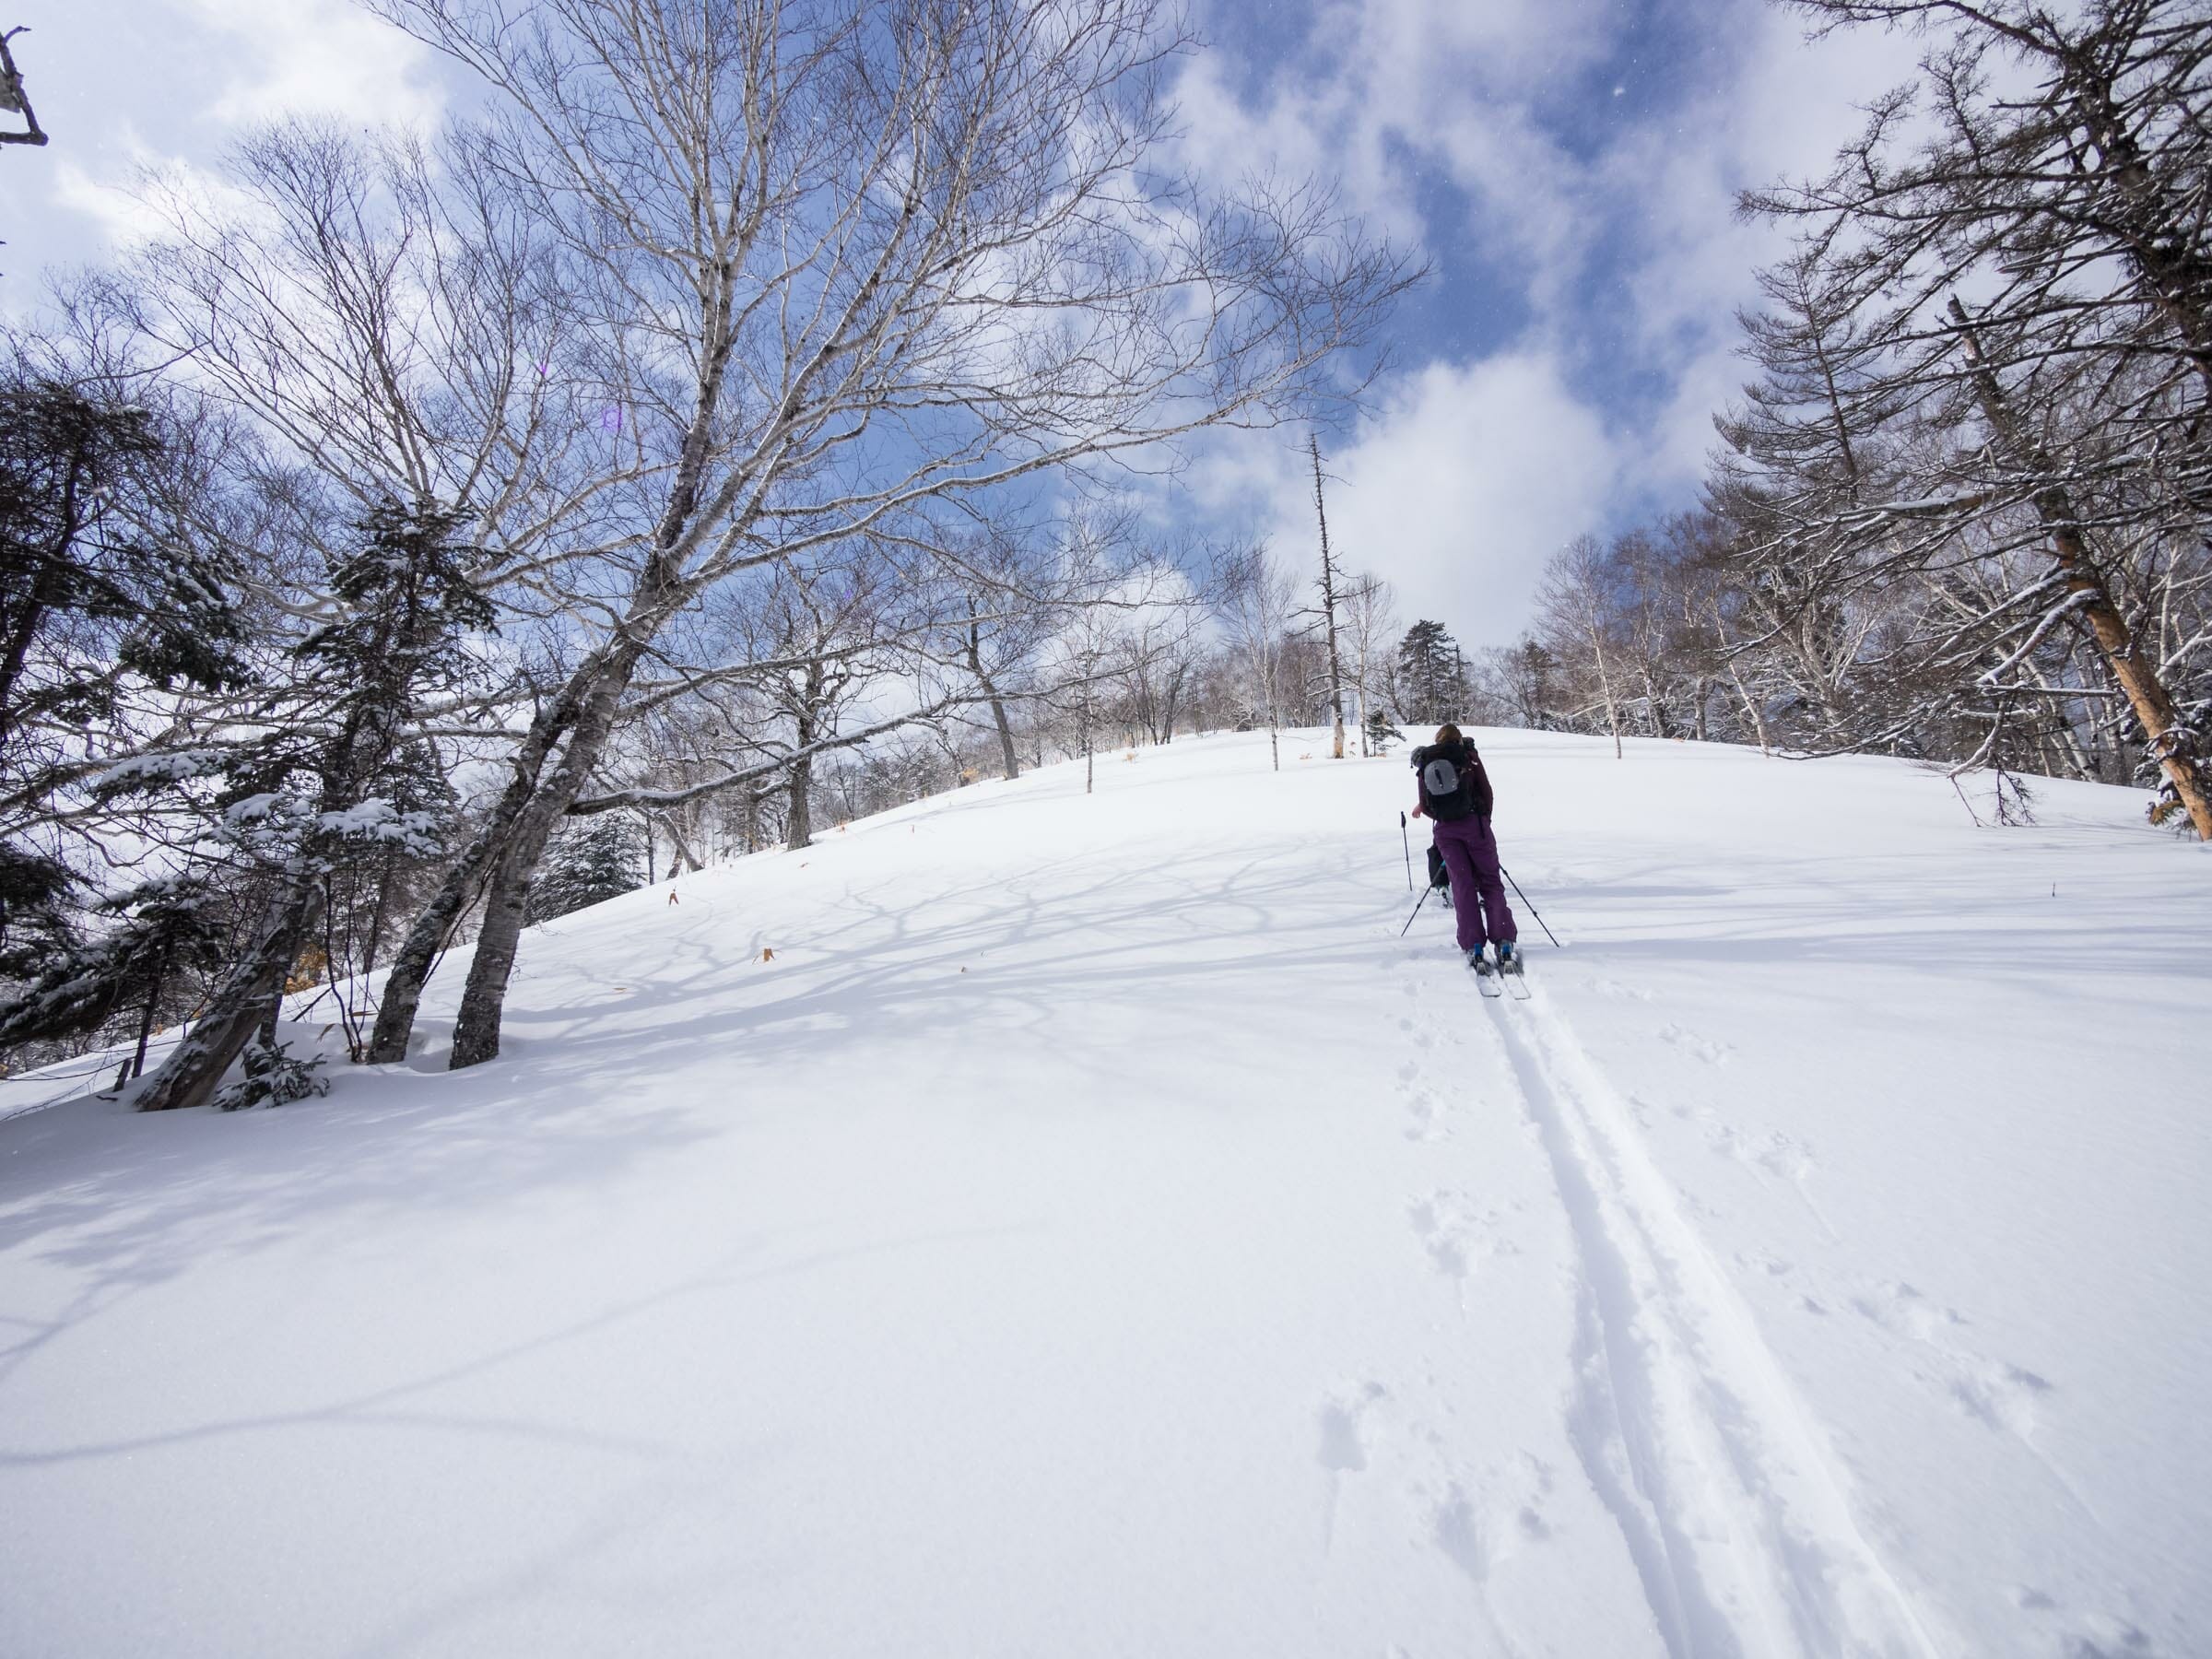 Shamansha-dake Ski Touring (Hokkaido, Japan)